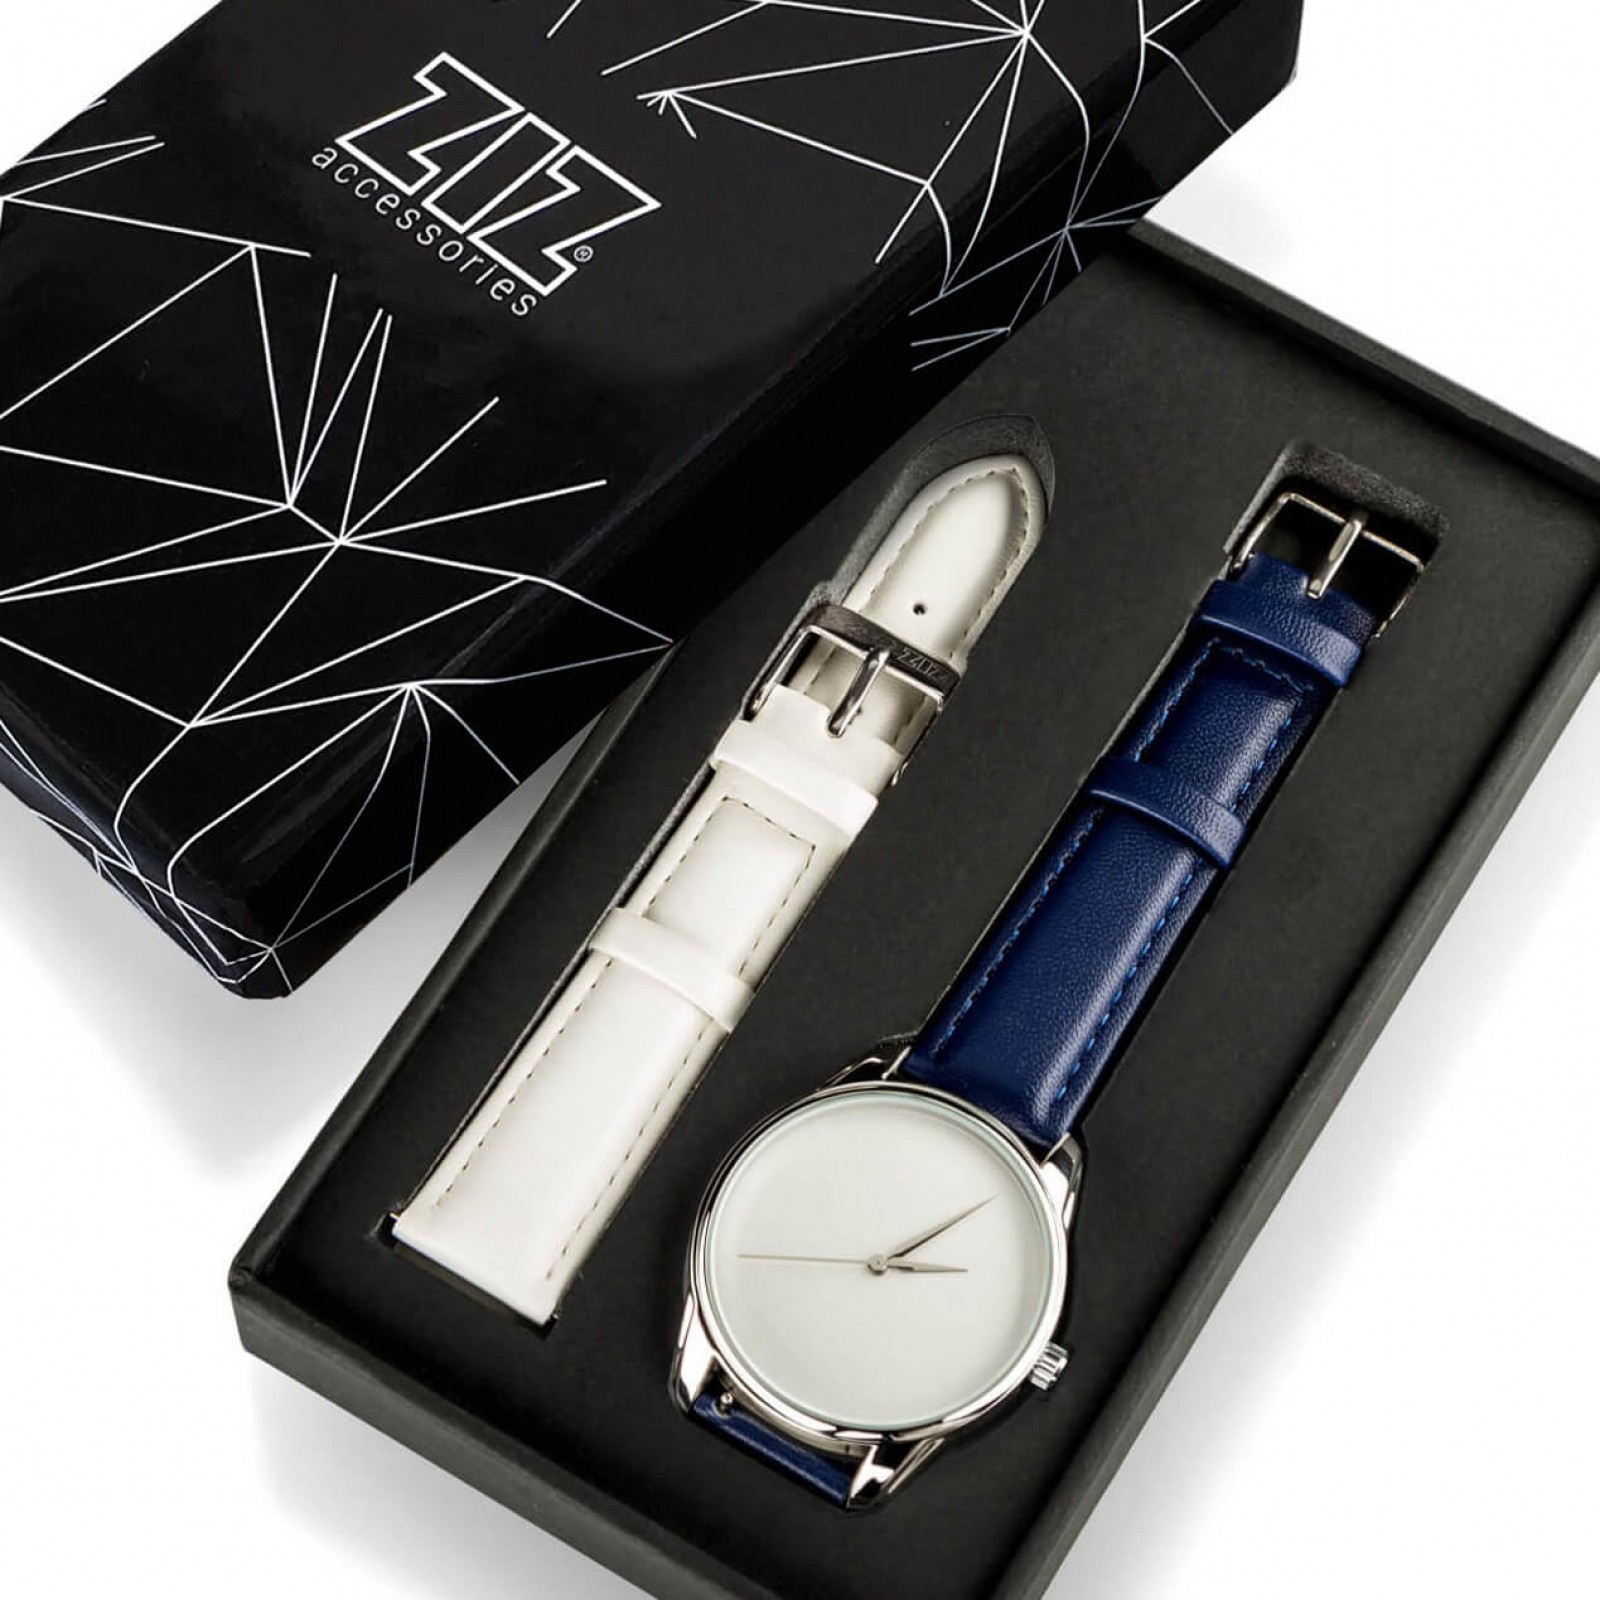 Годинник ZIZ Мінімалізм, ремінець нічна синь, срібло і додатковий ремінець 142864